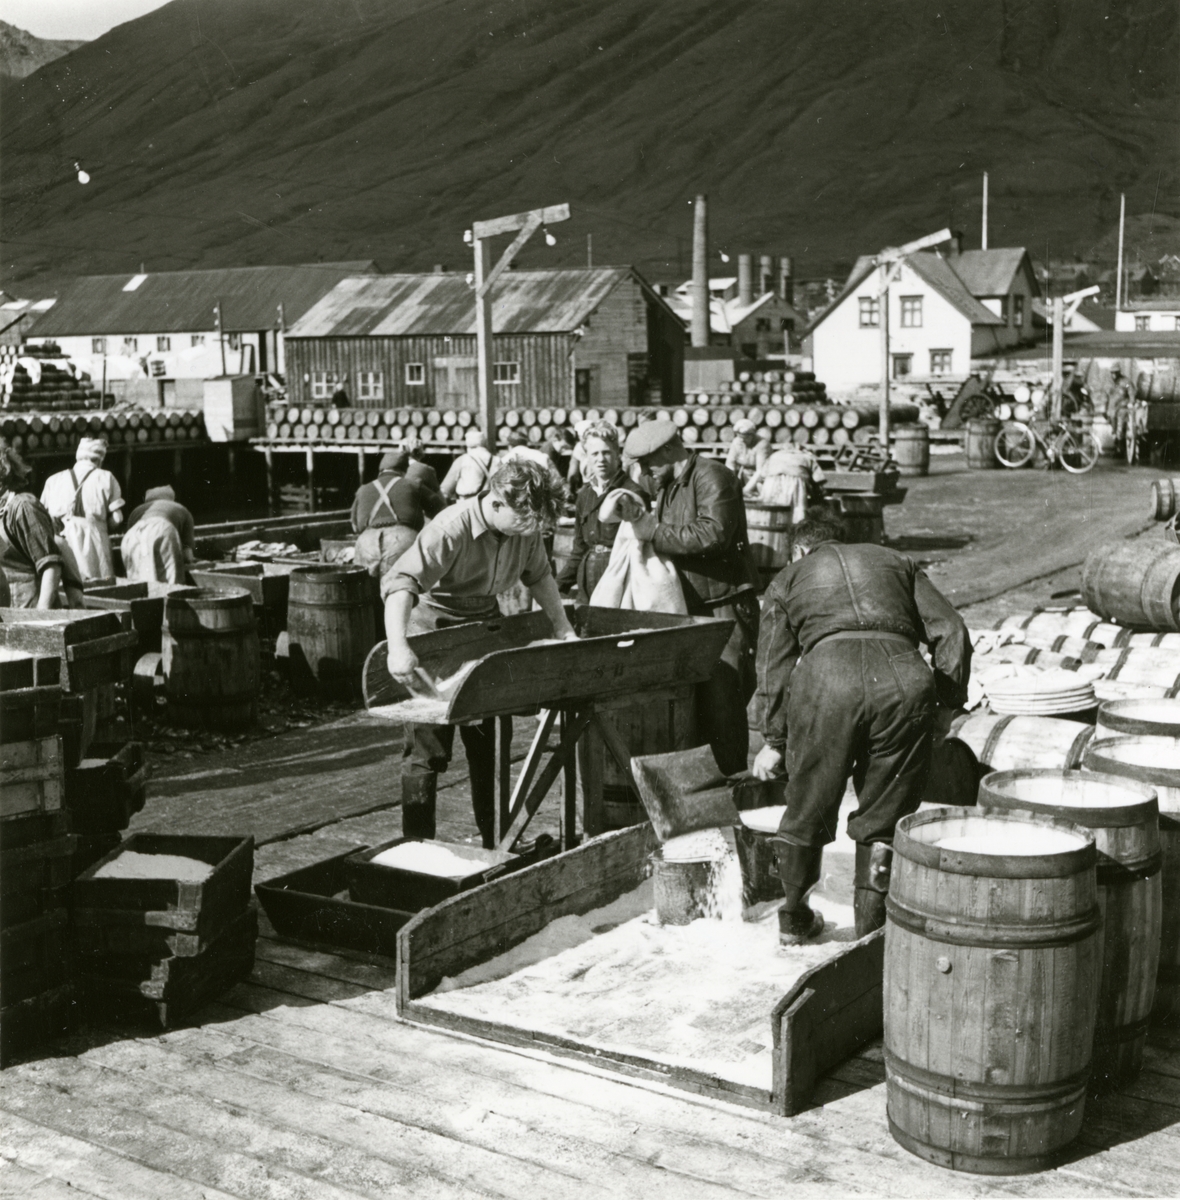 Blandning av salt för saltning av sill i isländsk hamn, 1948.